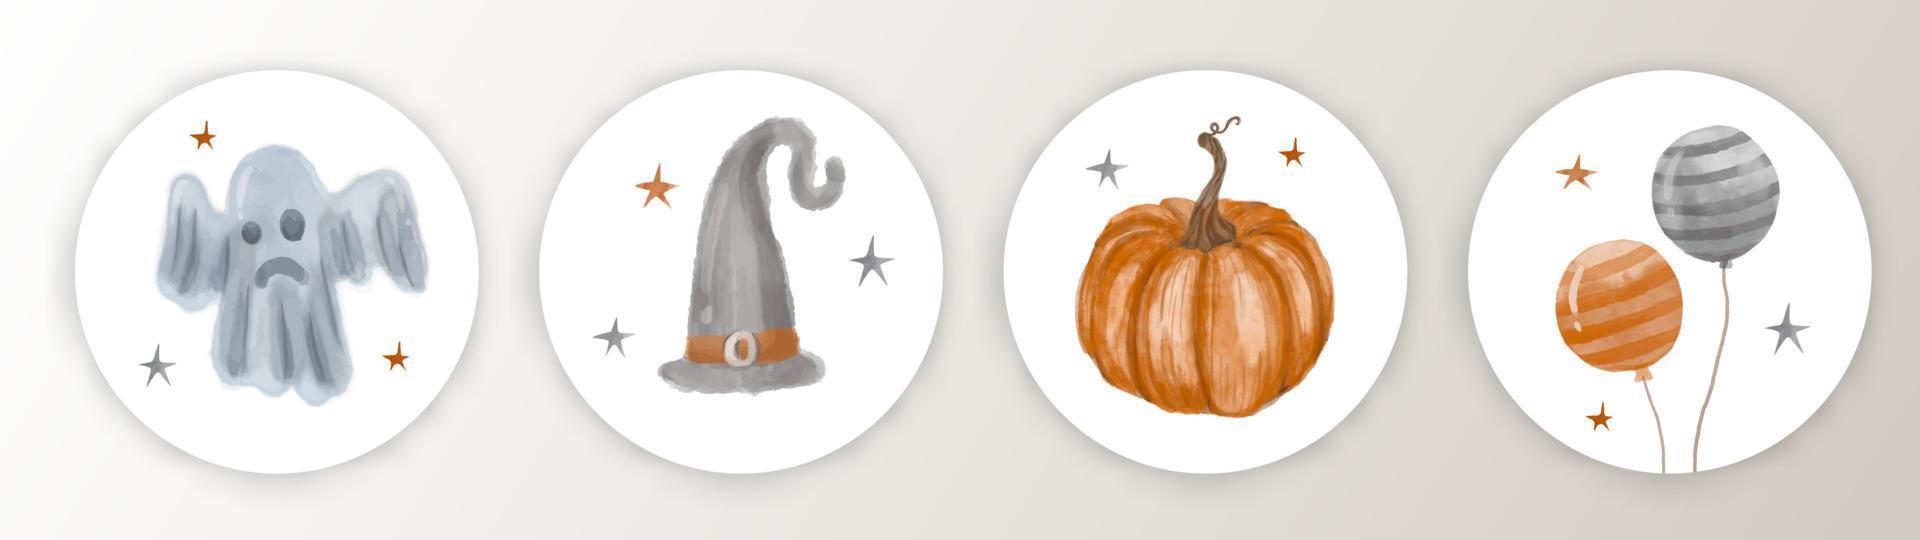 divertidas etiquetas de barra de caramelo de halloween dibujadas a mano con acuarela. linda caricatura de halloween. estilo infantil. calabaza, globo, sombrero y pequeño fantasma. vector